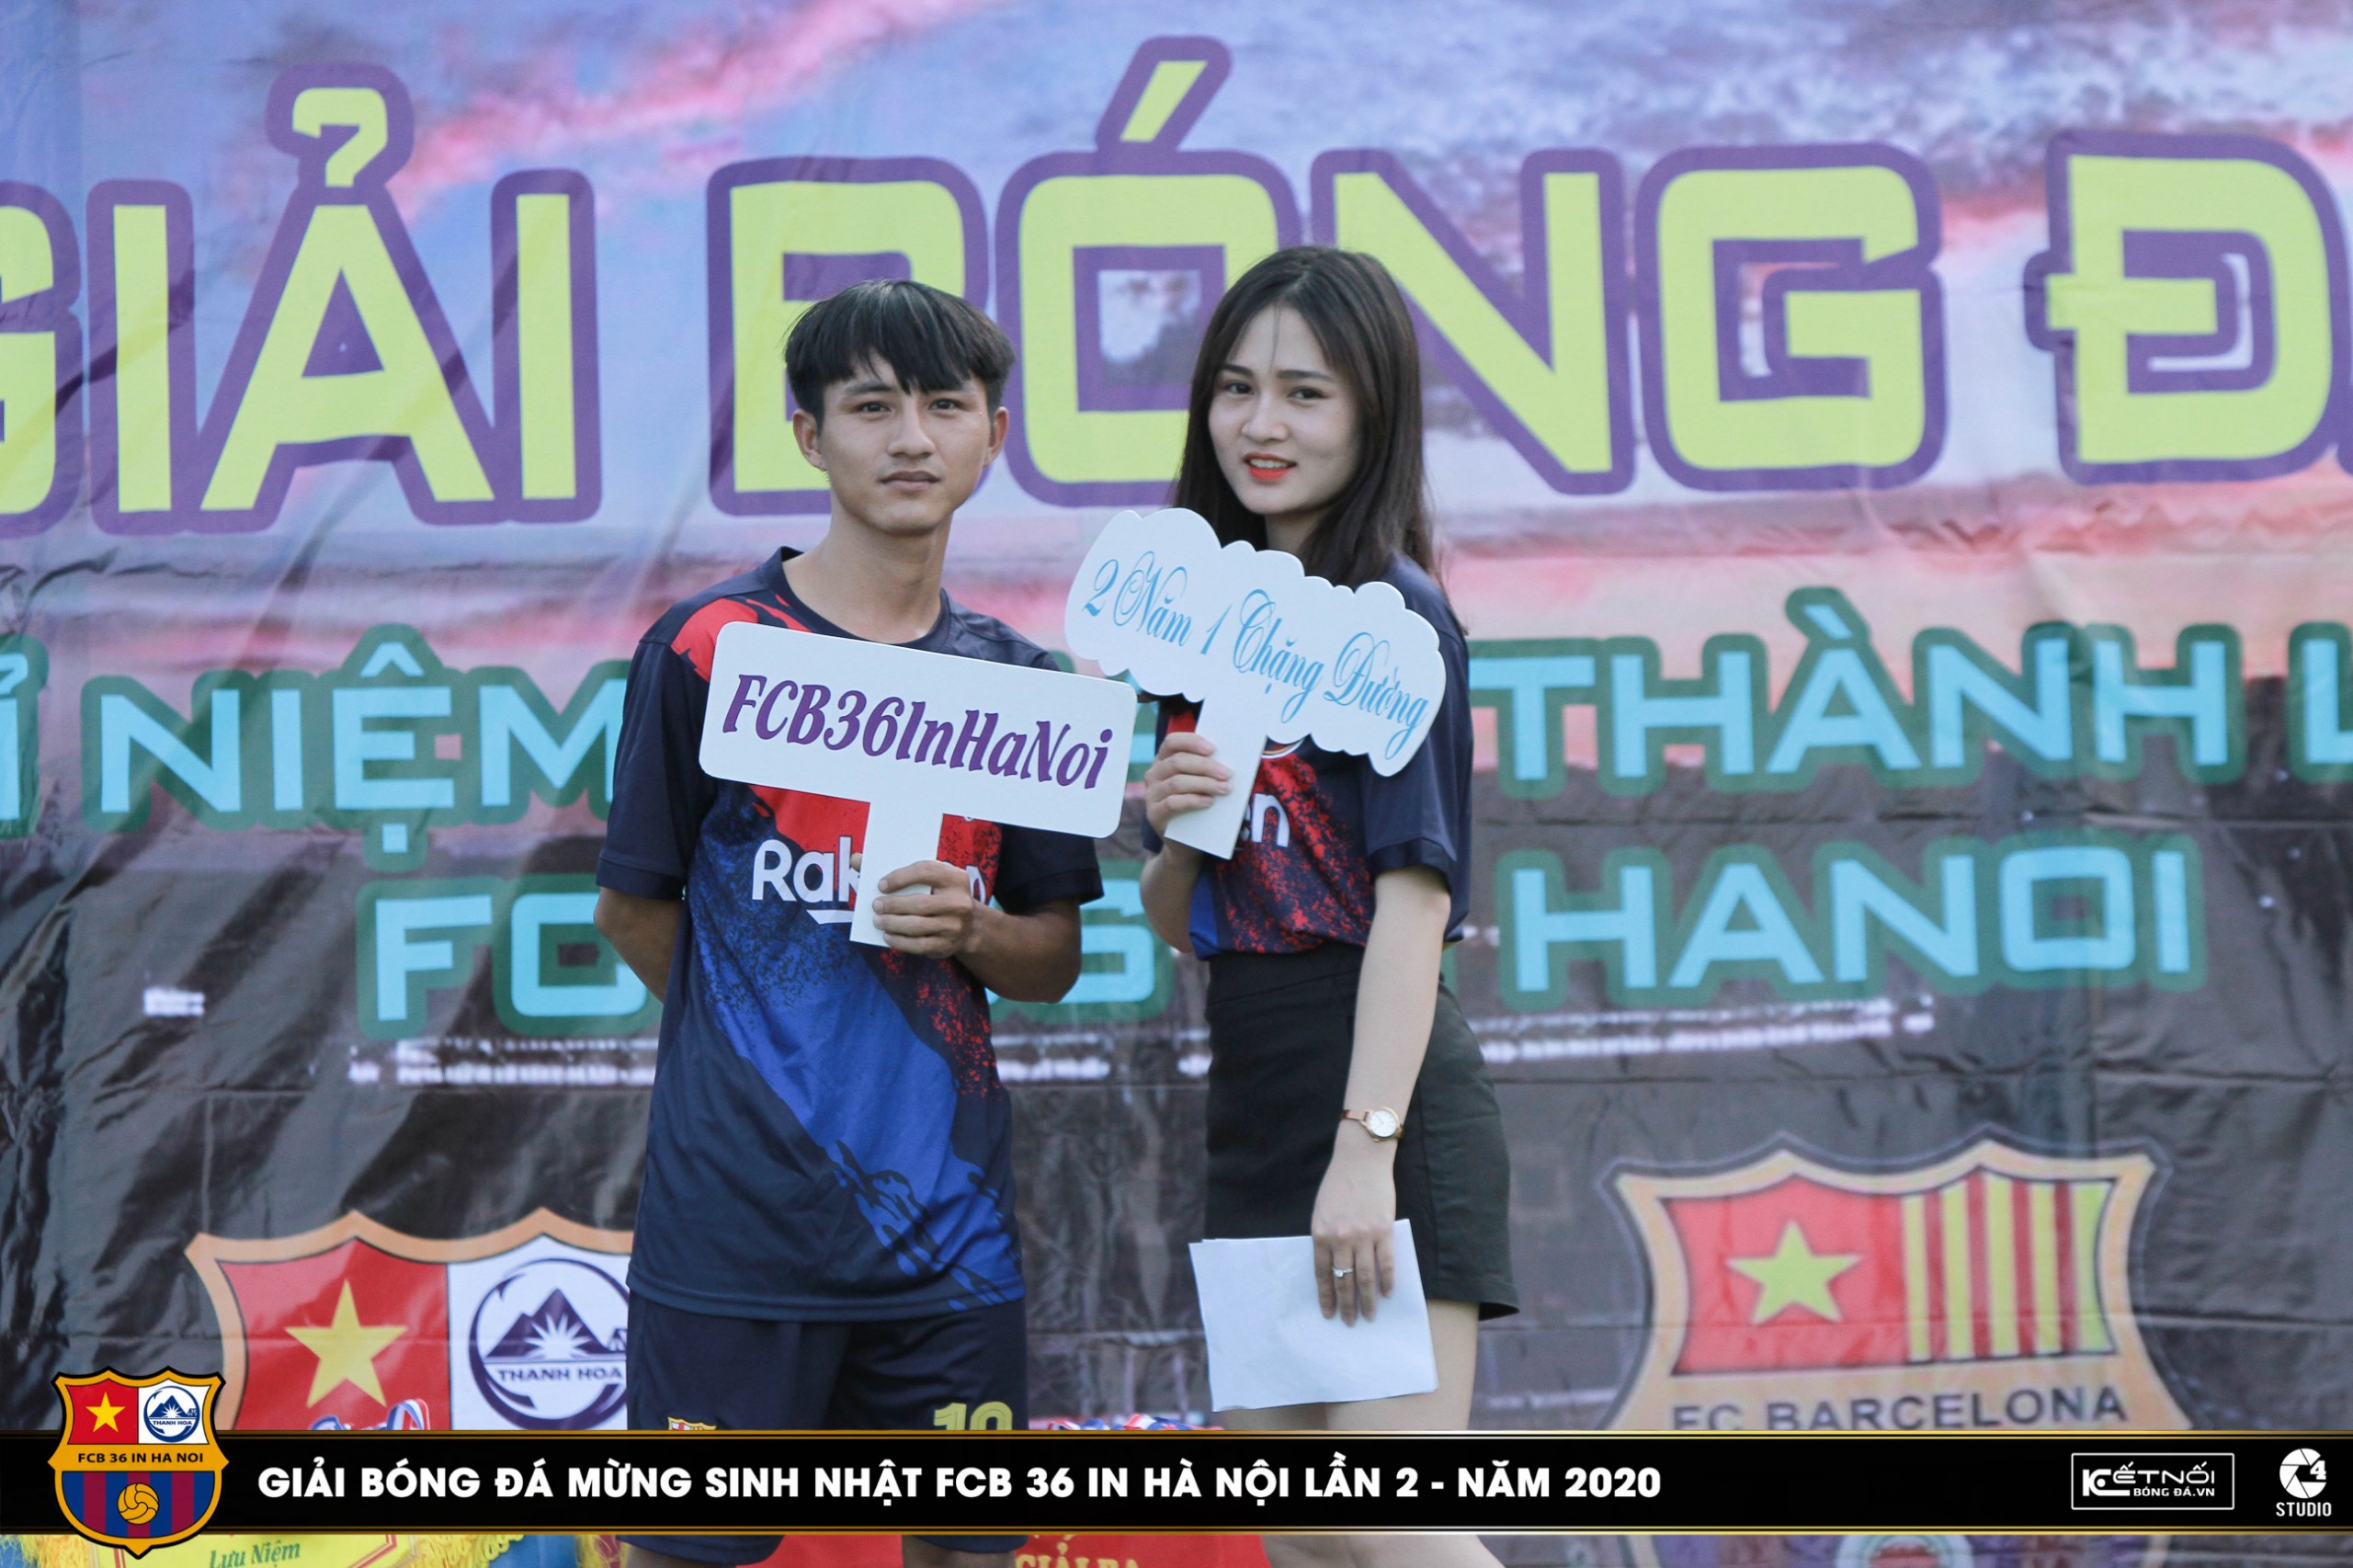 Sinh nhật FCB 36 in Hà Nội 2 tuổi